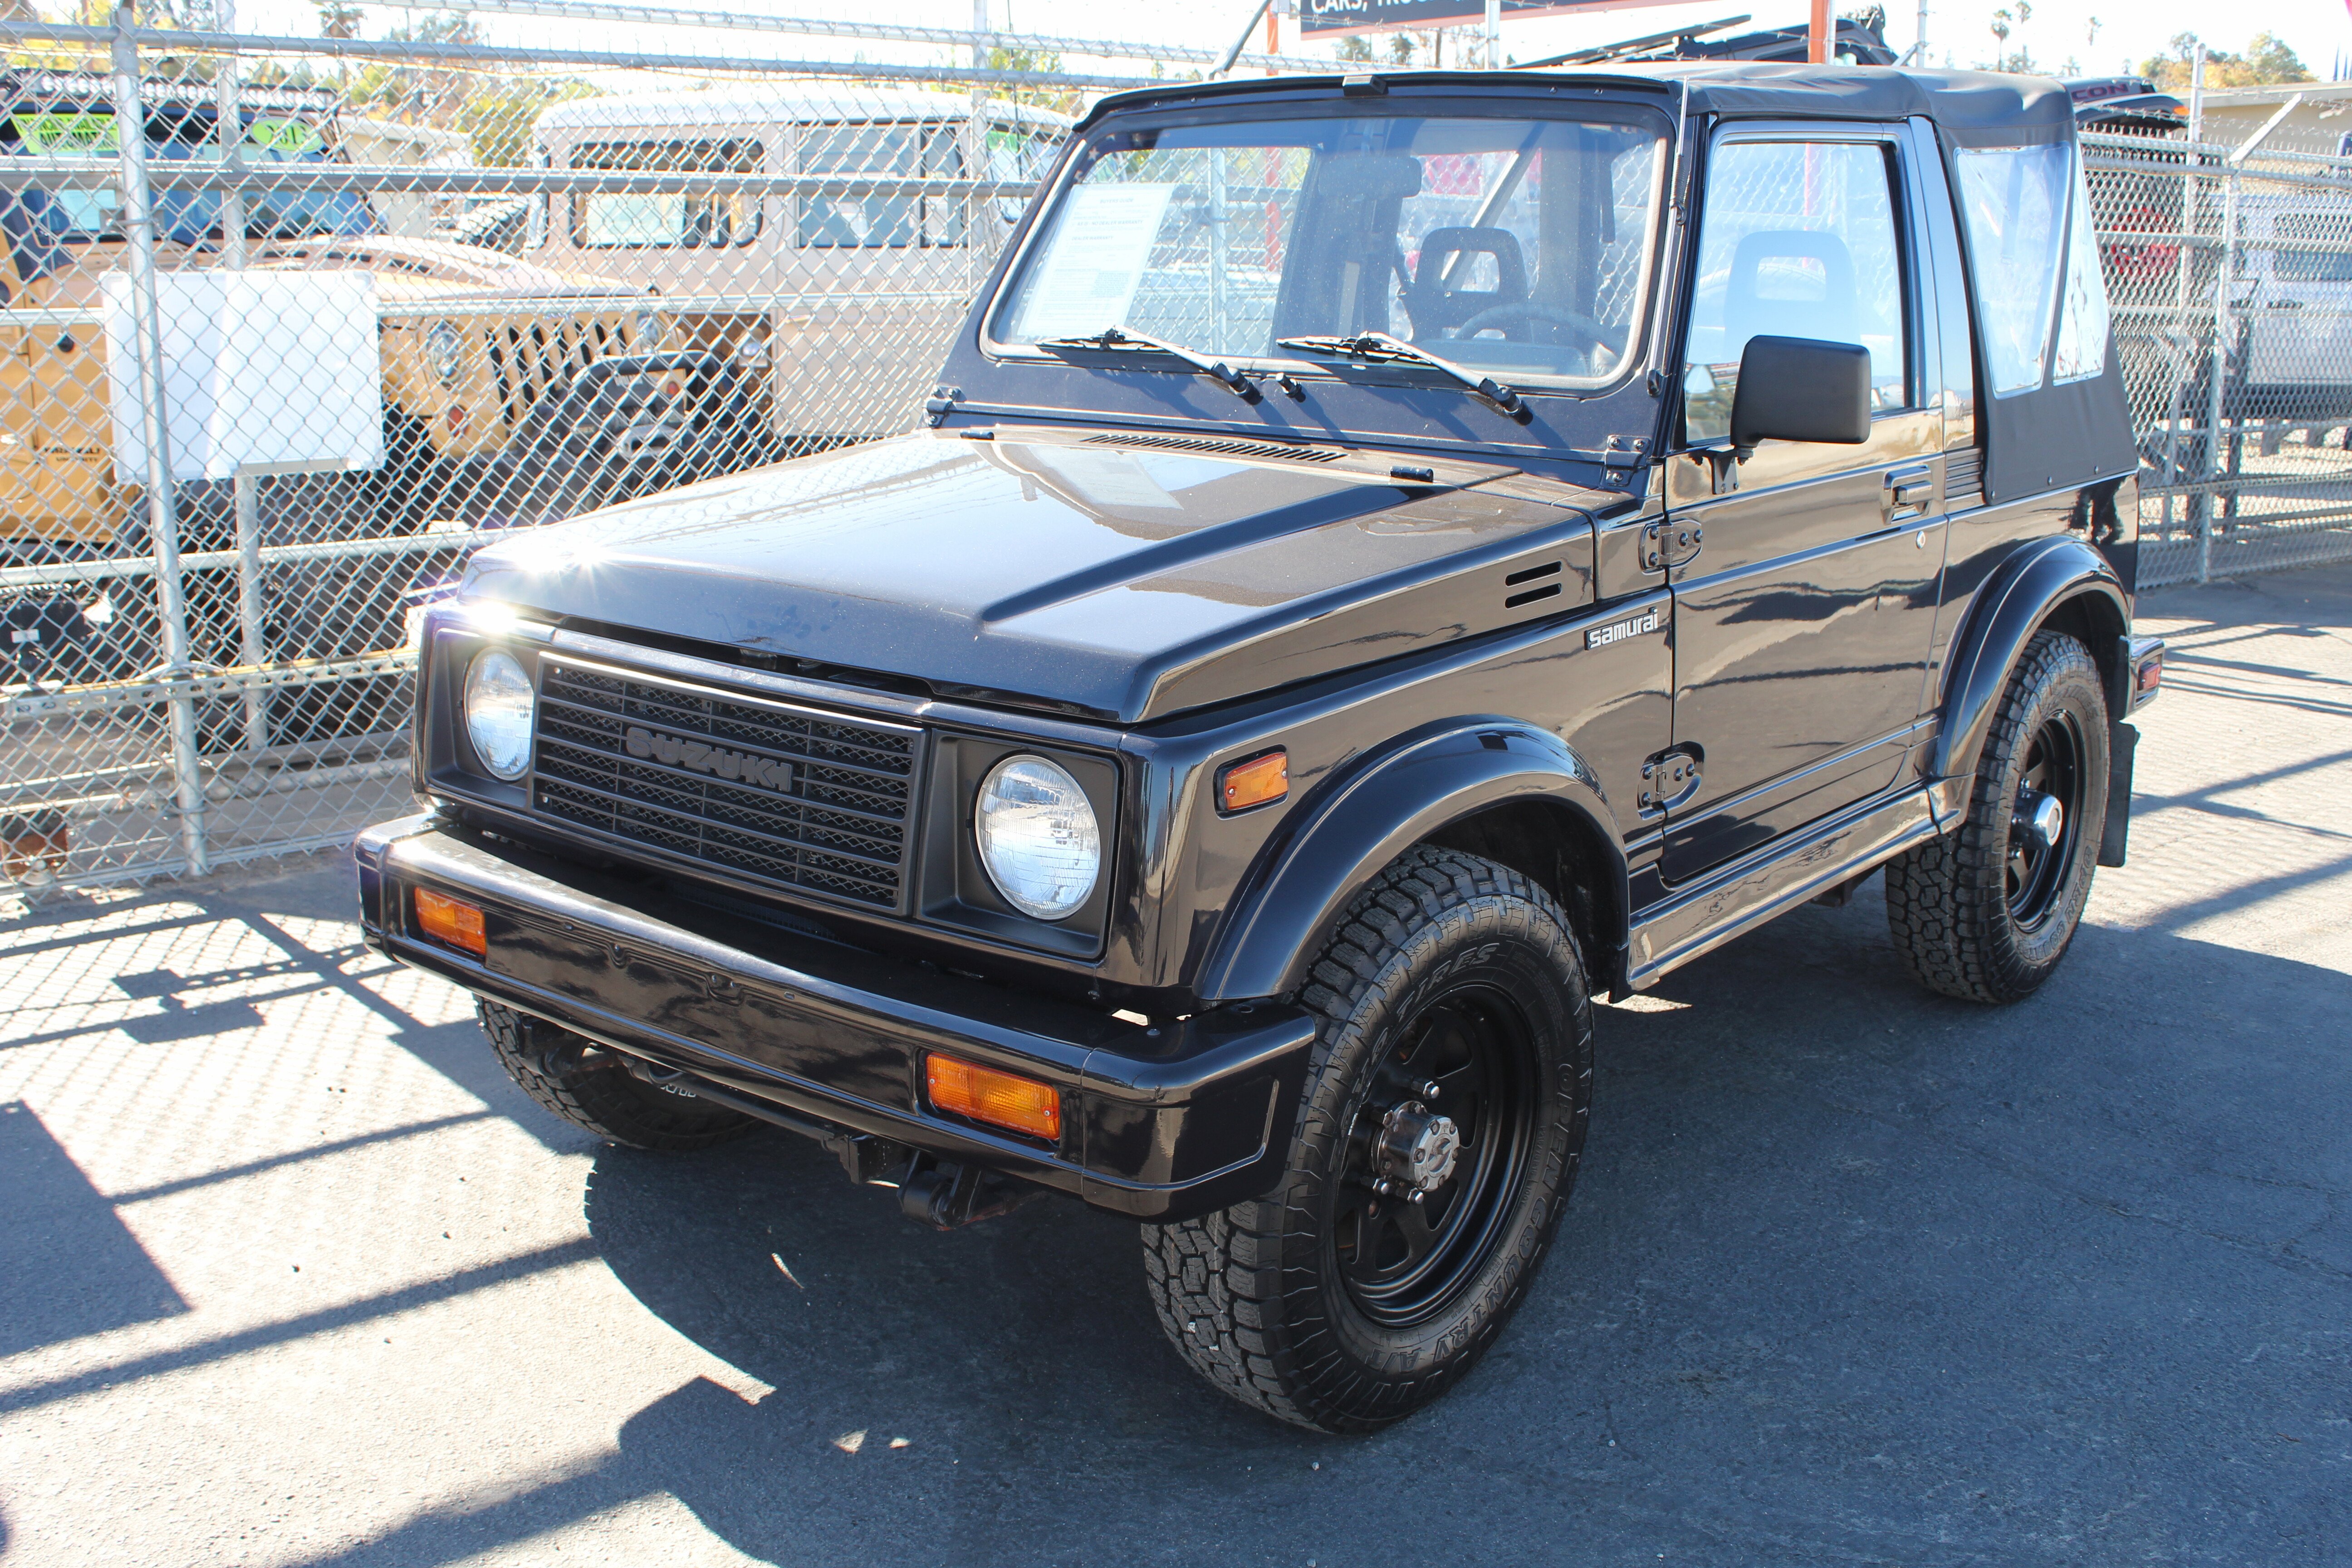 https://0.cdn.autotraderspecialty.com/1987-Suzuki-Samurai-import_classics--Car-101987723-32d560fbe1e0bbc332e9189d6f2d8f8b.jpg?rot=0